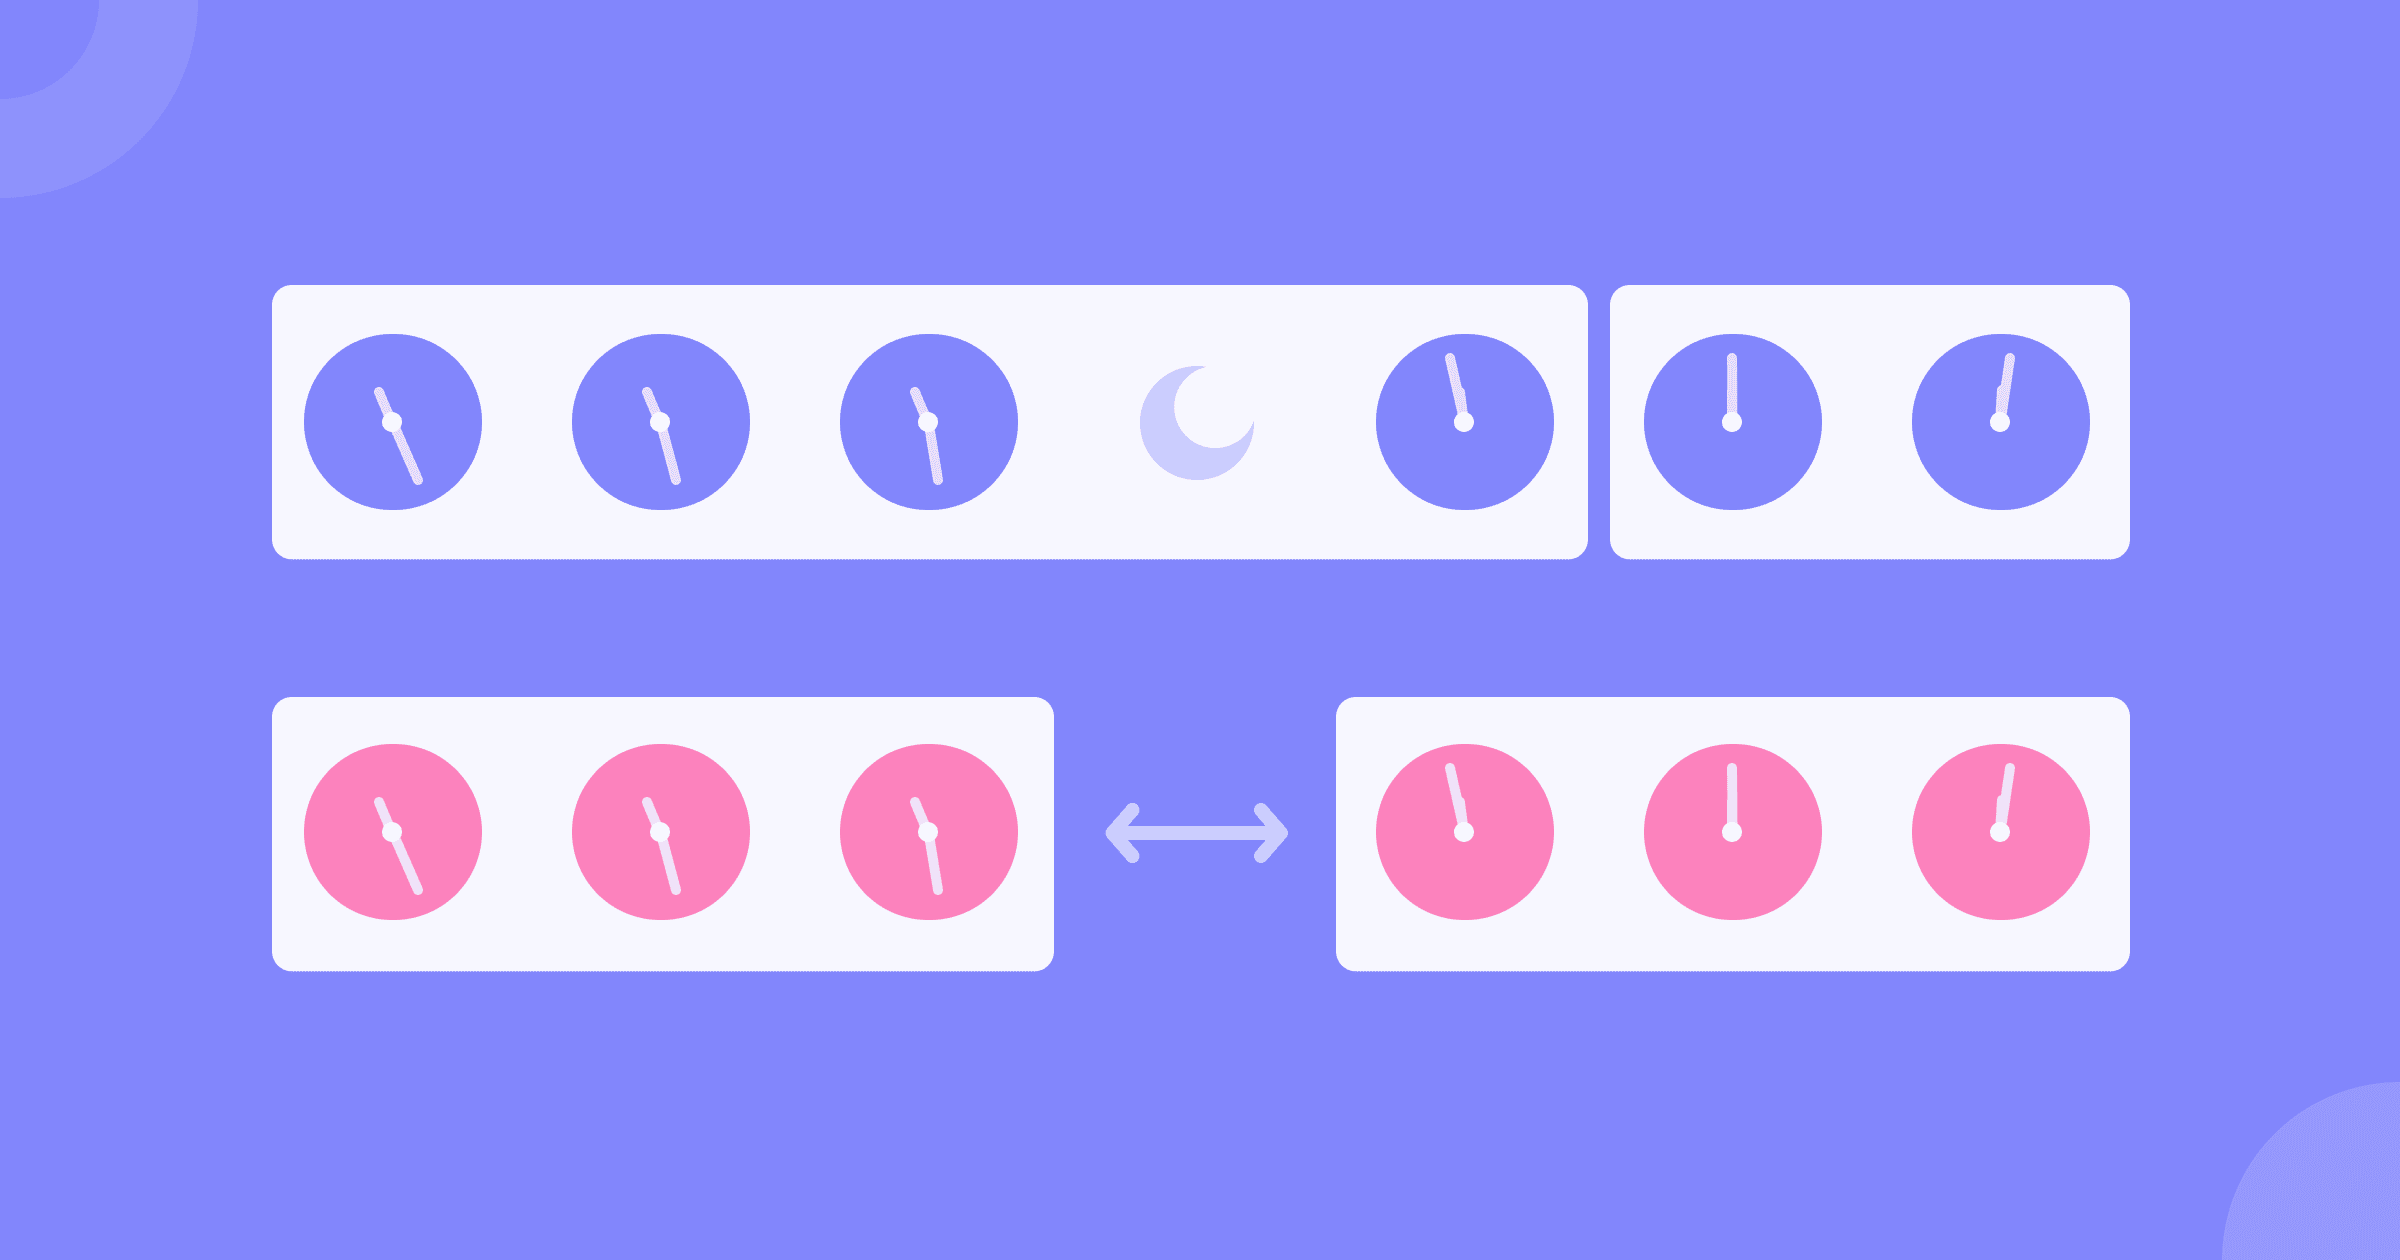 Duas linhas com gráficos de ícones de relógio representando dinâmicas de definição de início e fim de sessão.